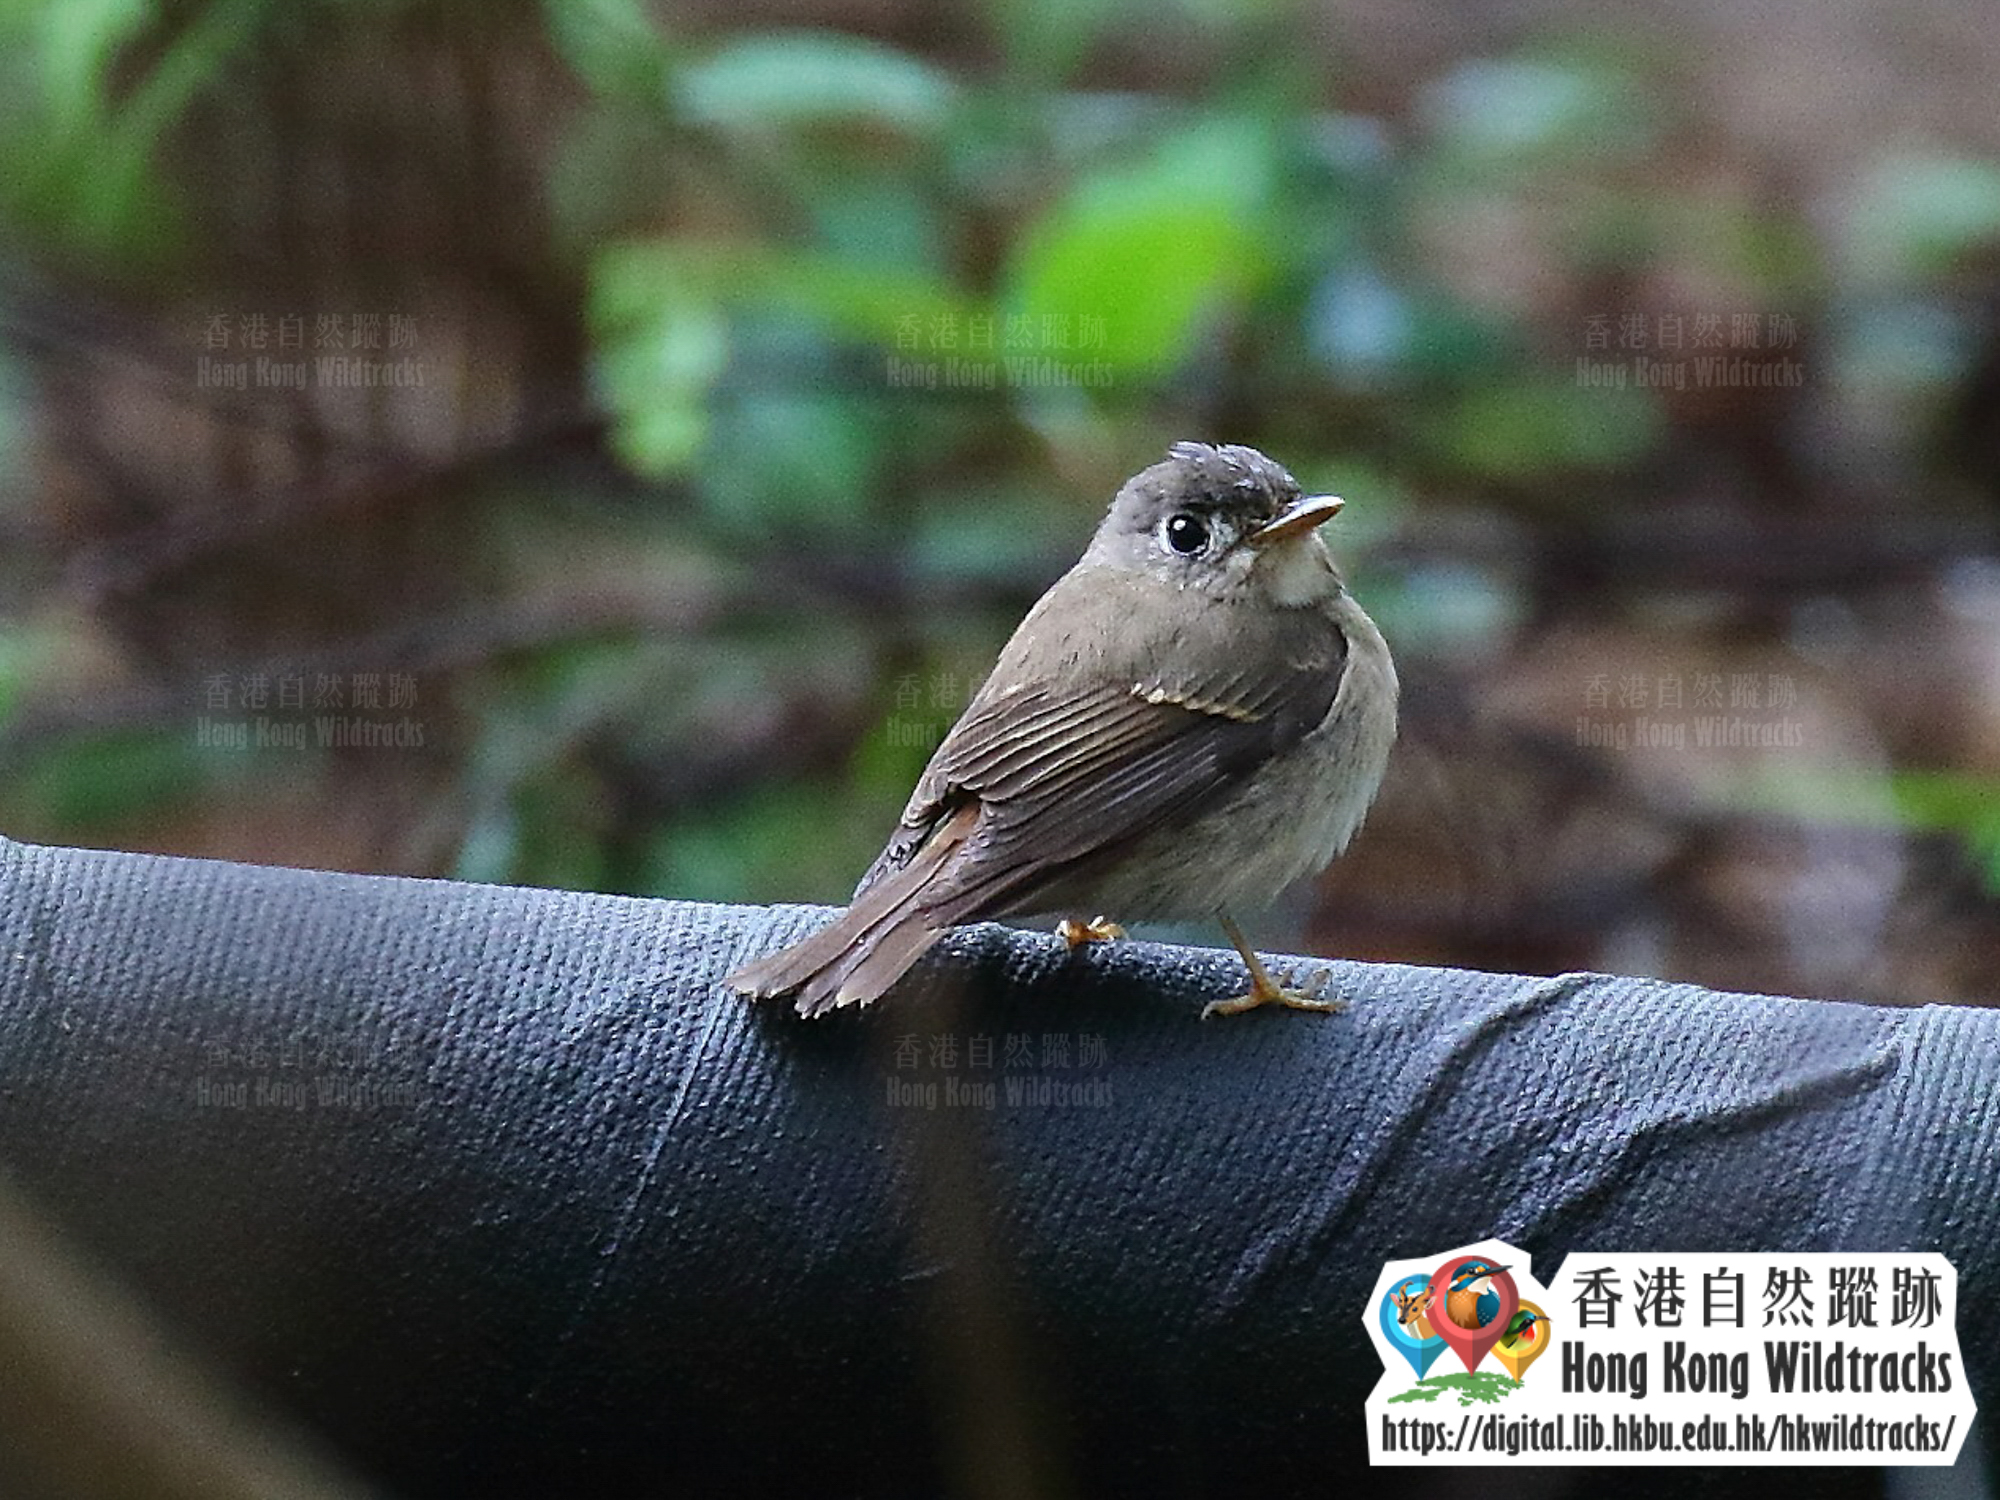 褐胸鶲 Brown-breasted Flycatcher